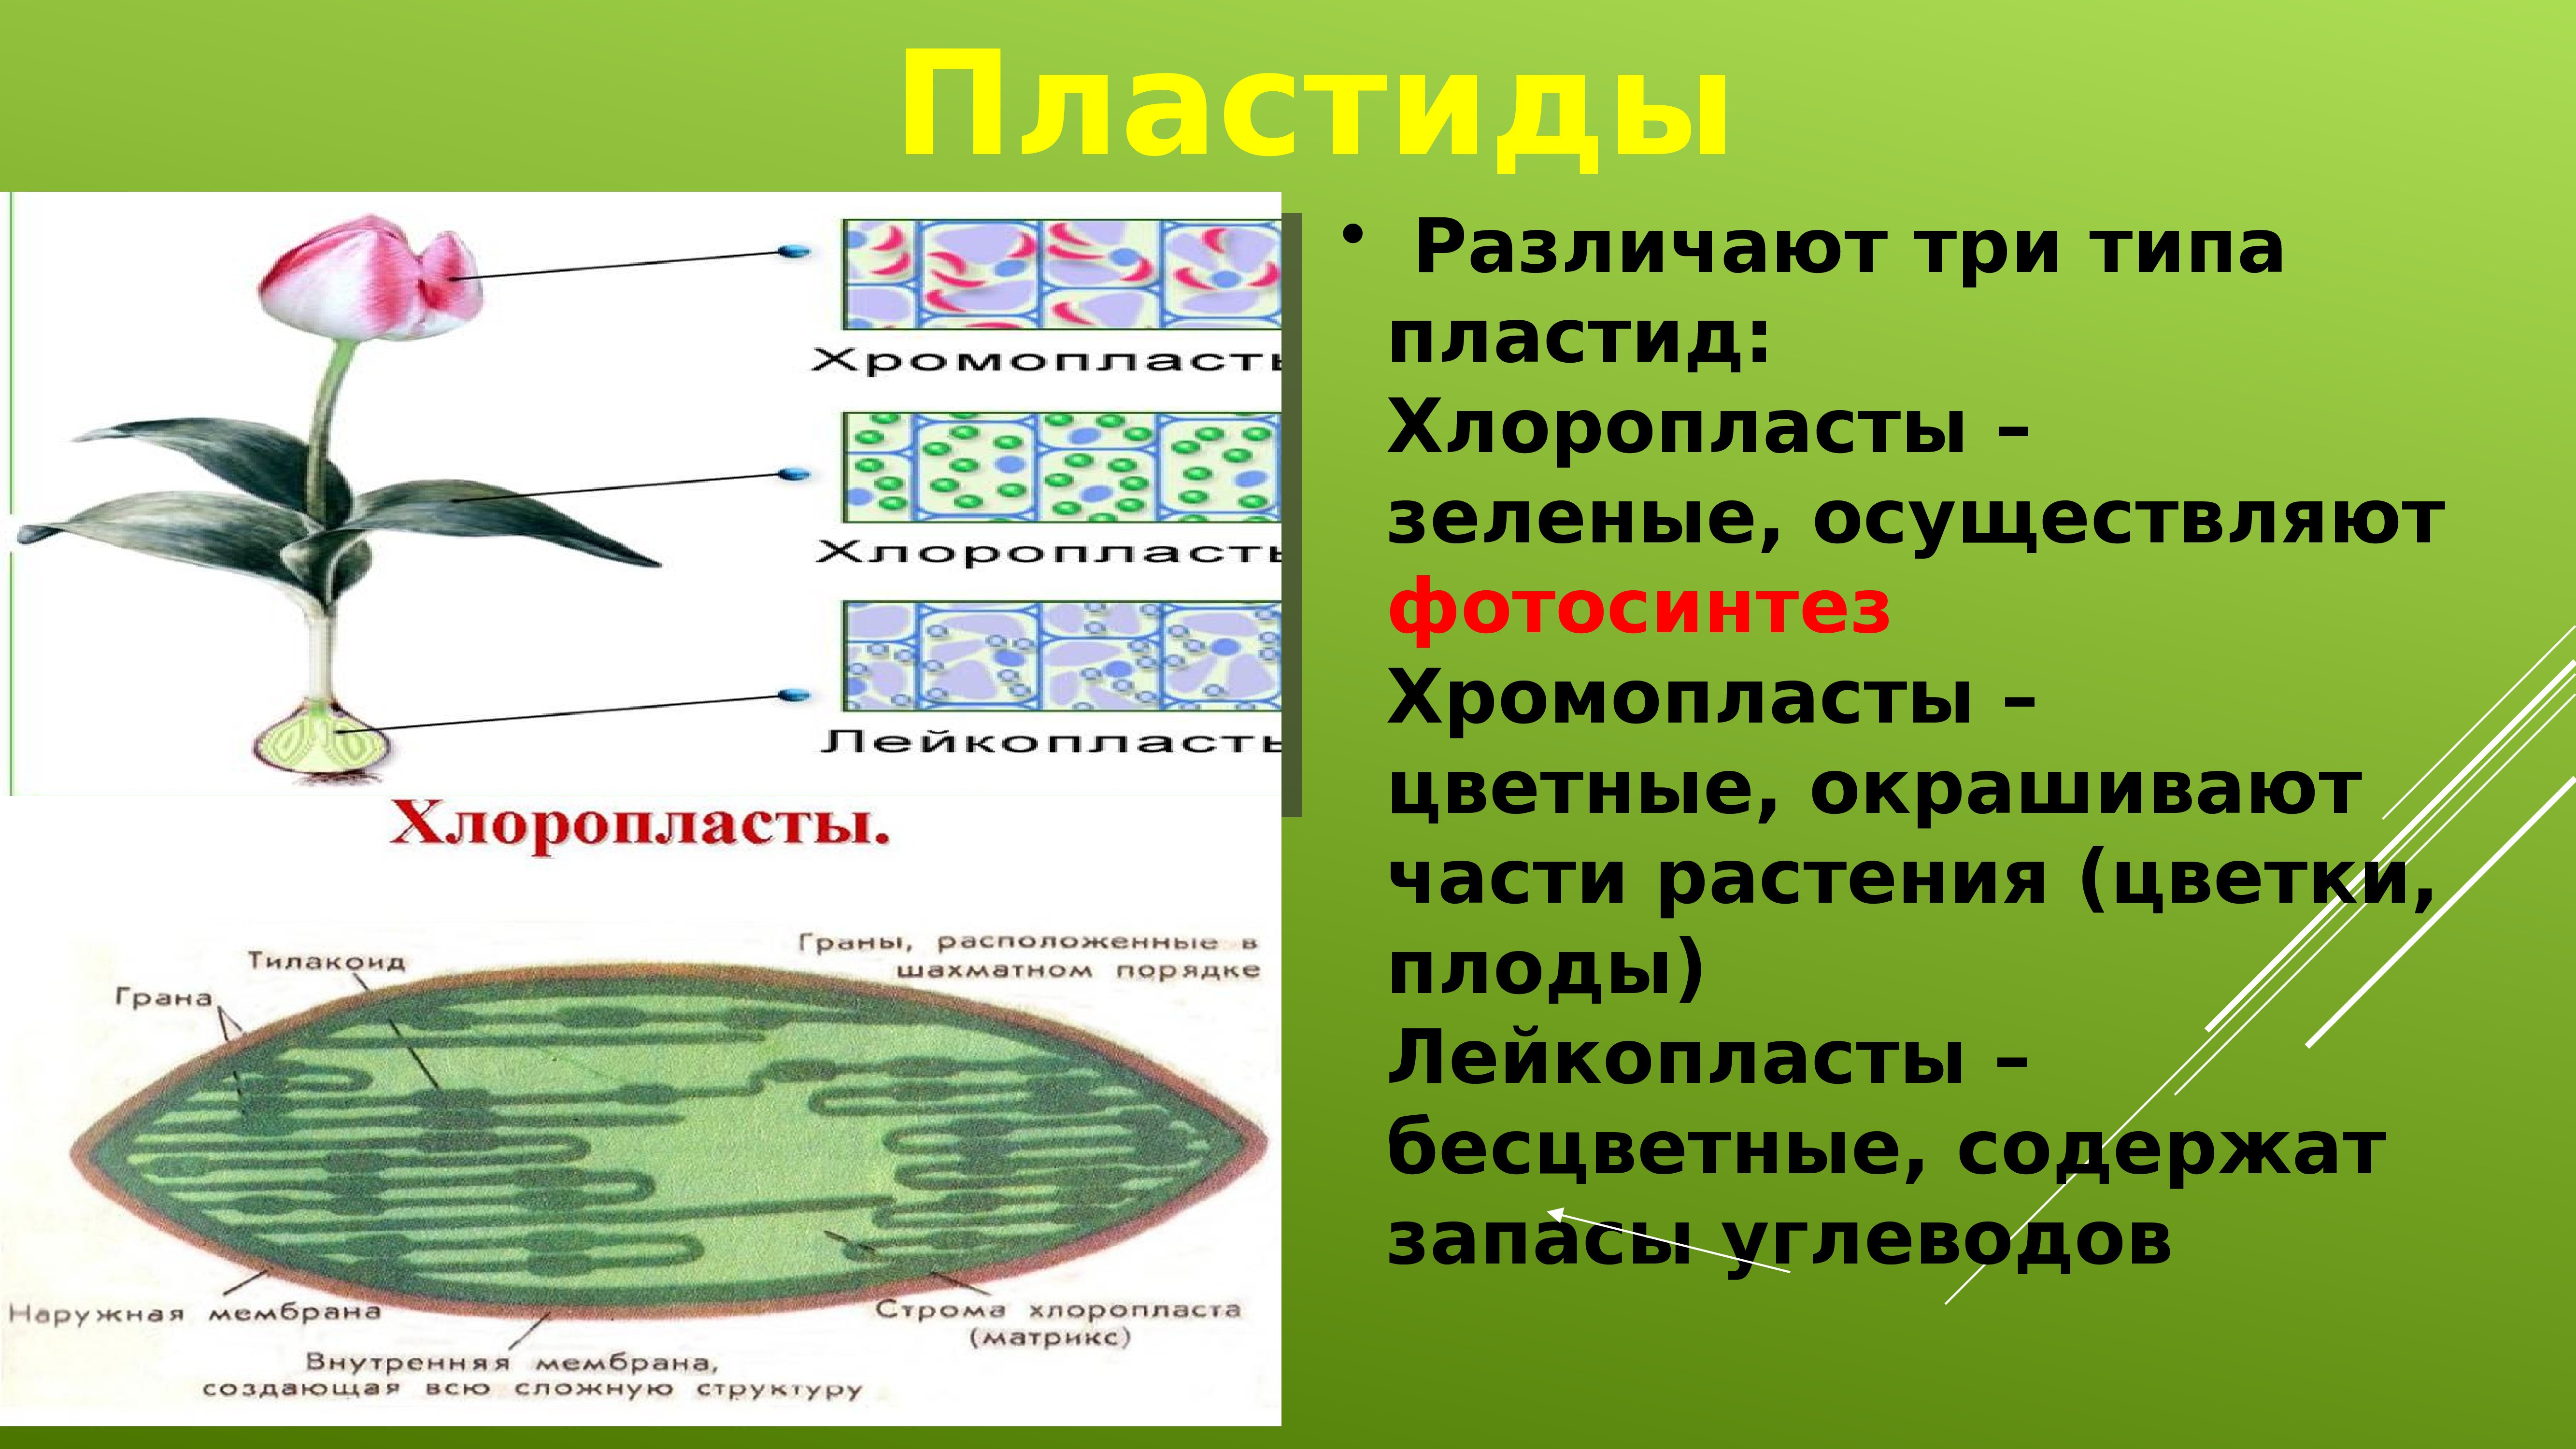 Хлоропласты характерны для ответ. Пластиды растительной клетки 5 класс биология. Что такое хлоропласты в биологии 5 класс. Пластиды строение 5 класс биология. Хлоропласты и лейкопласты в клетках.